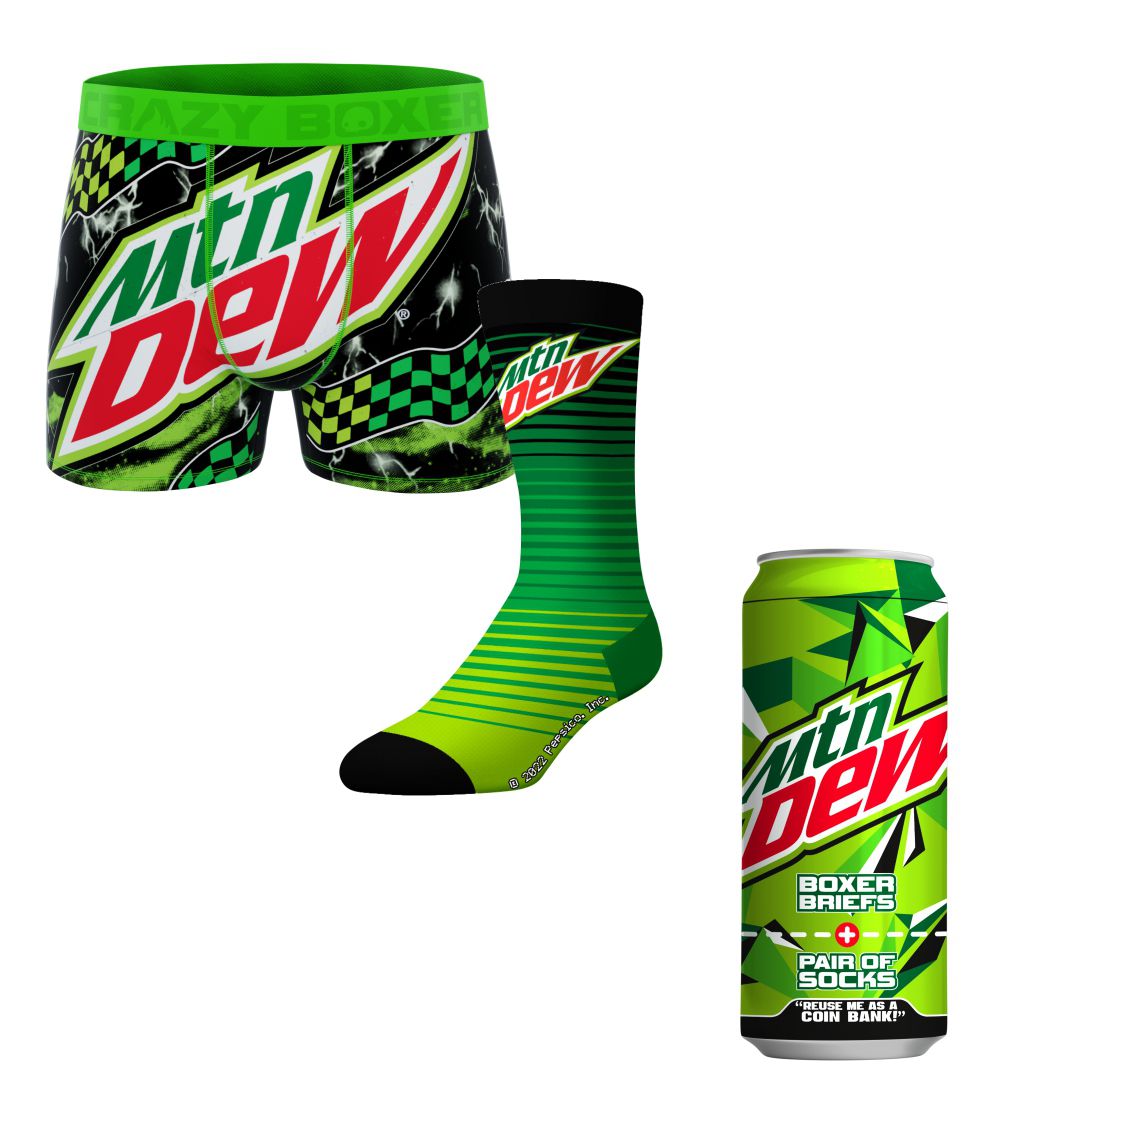 Mountain Dew Brand Boxer Briefs